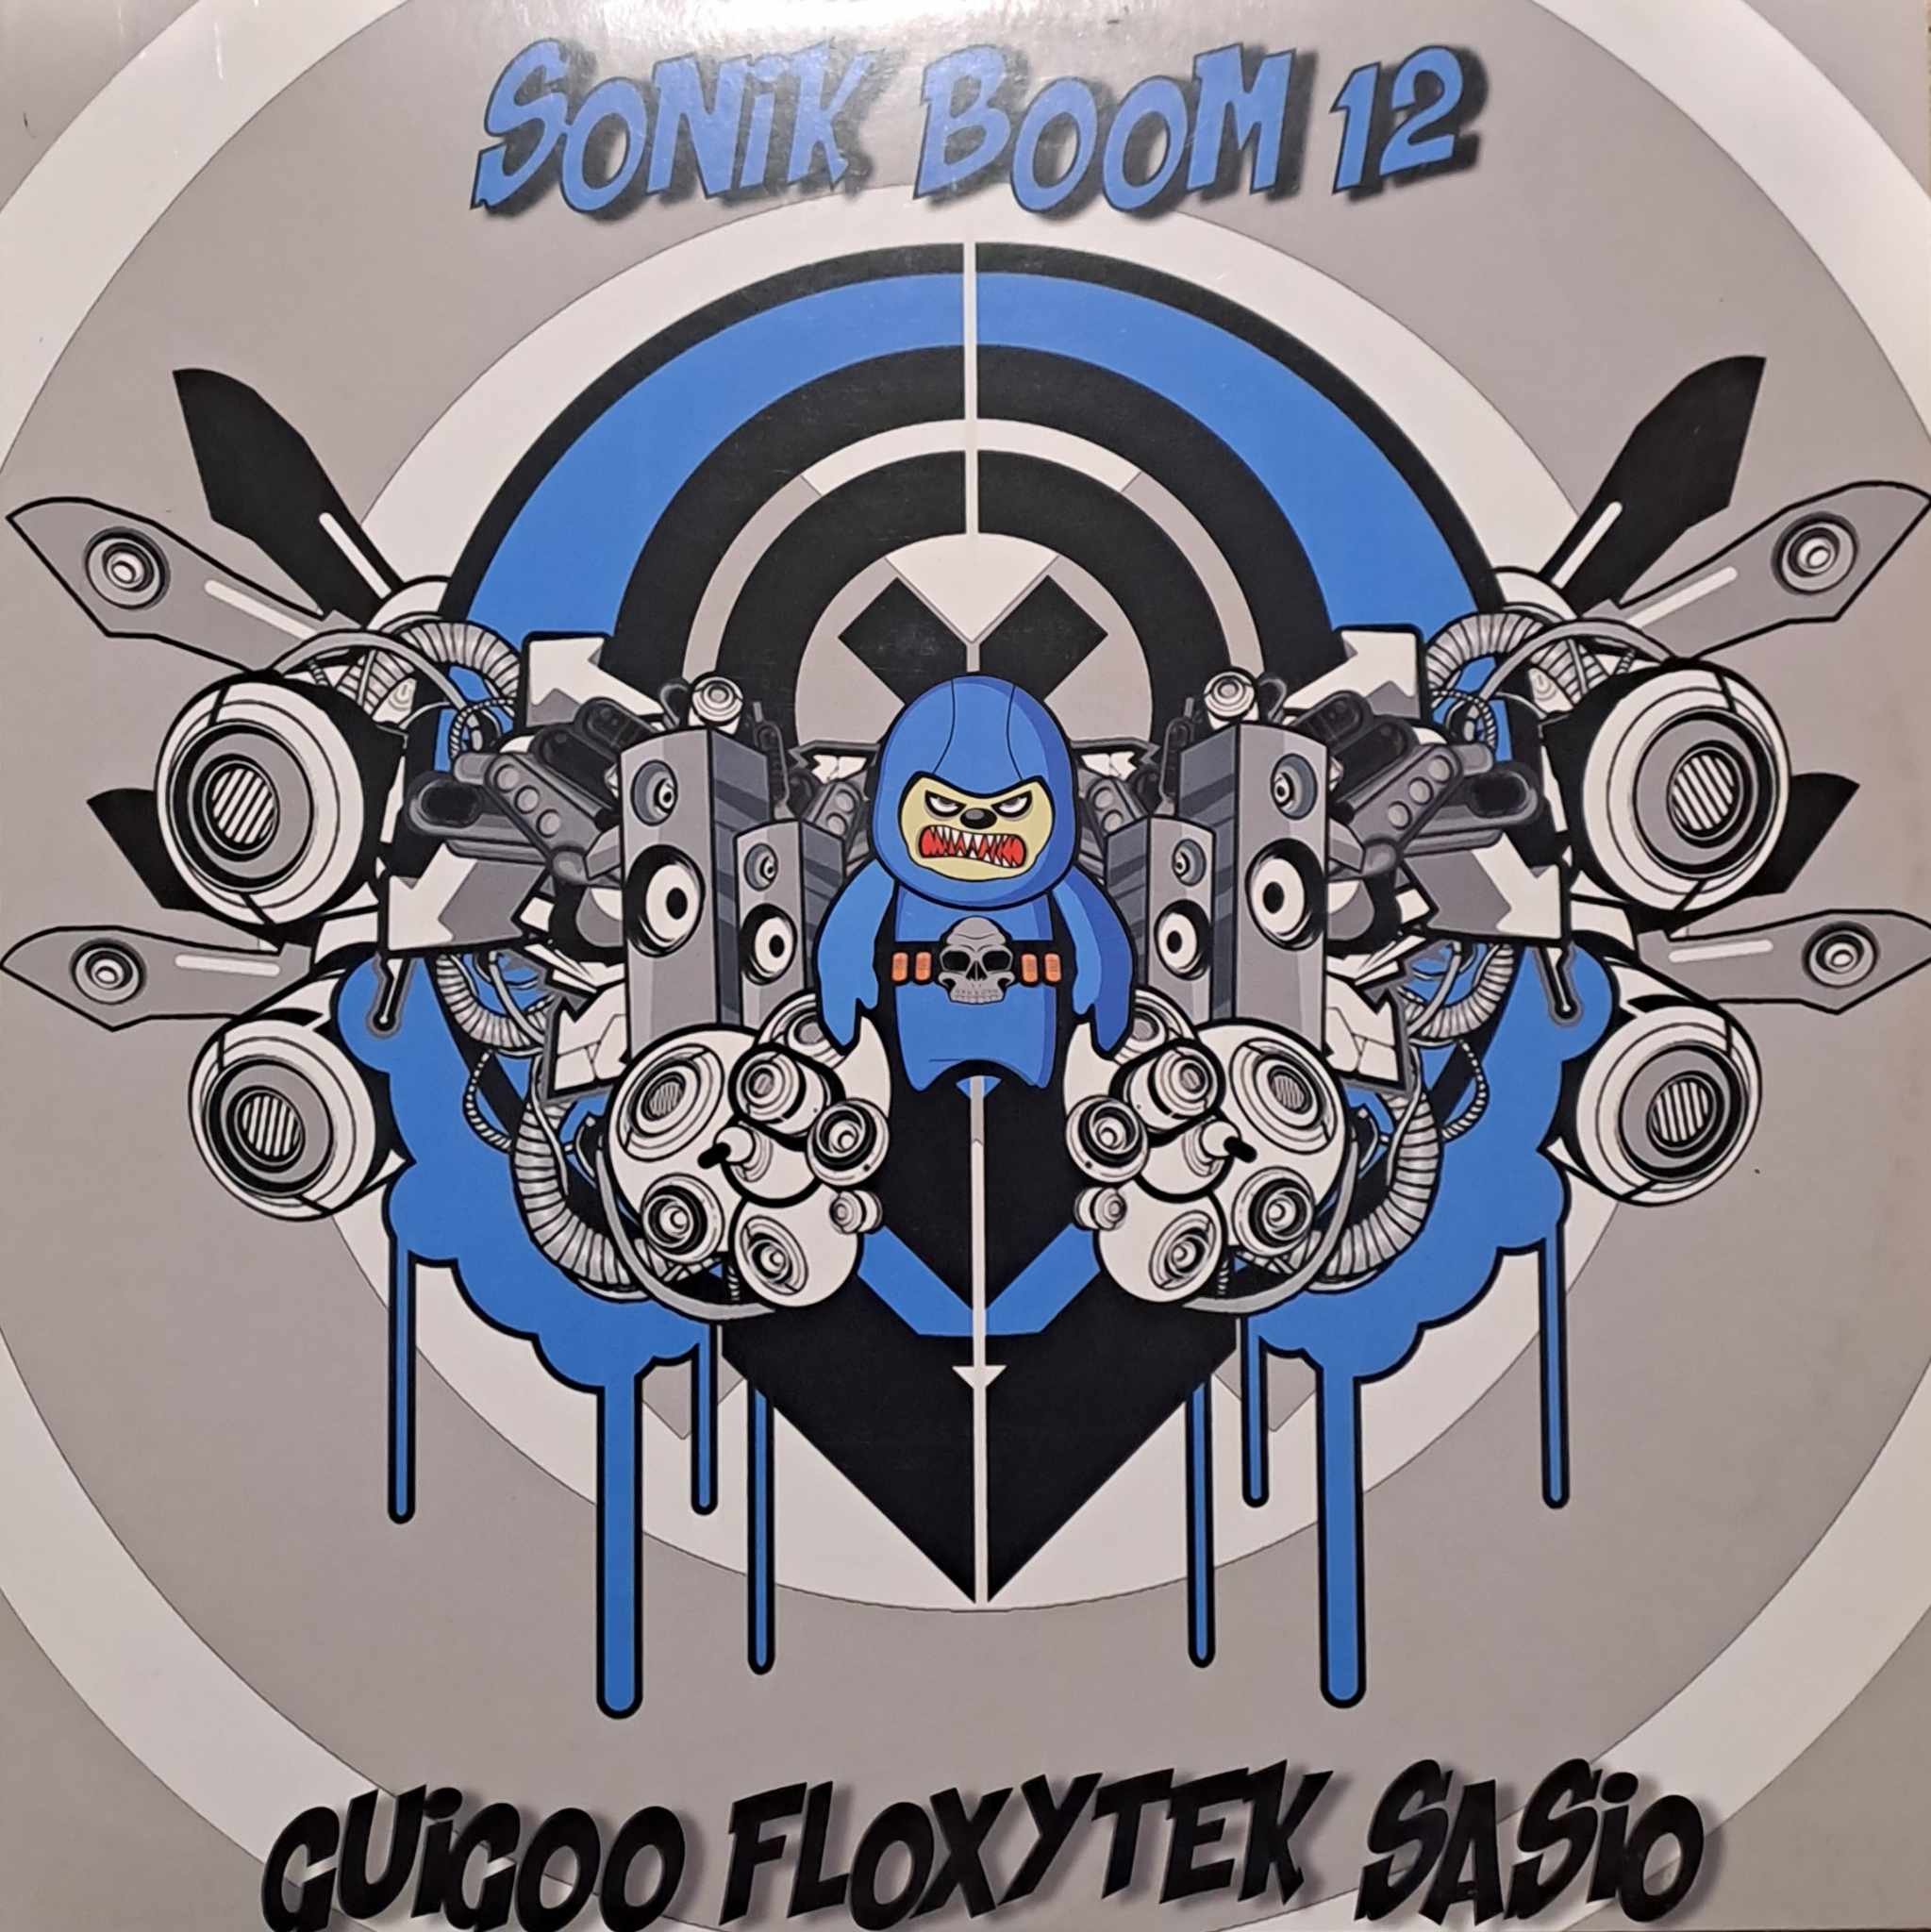 Sonik Boom 12 - vinyle hardcore